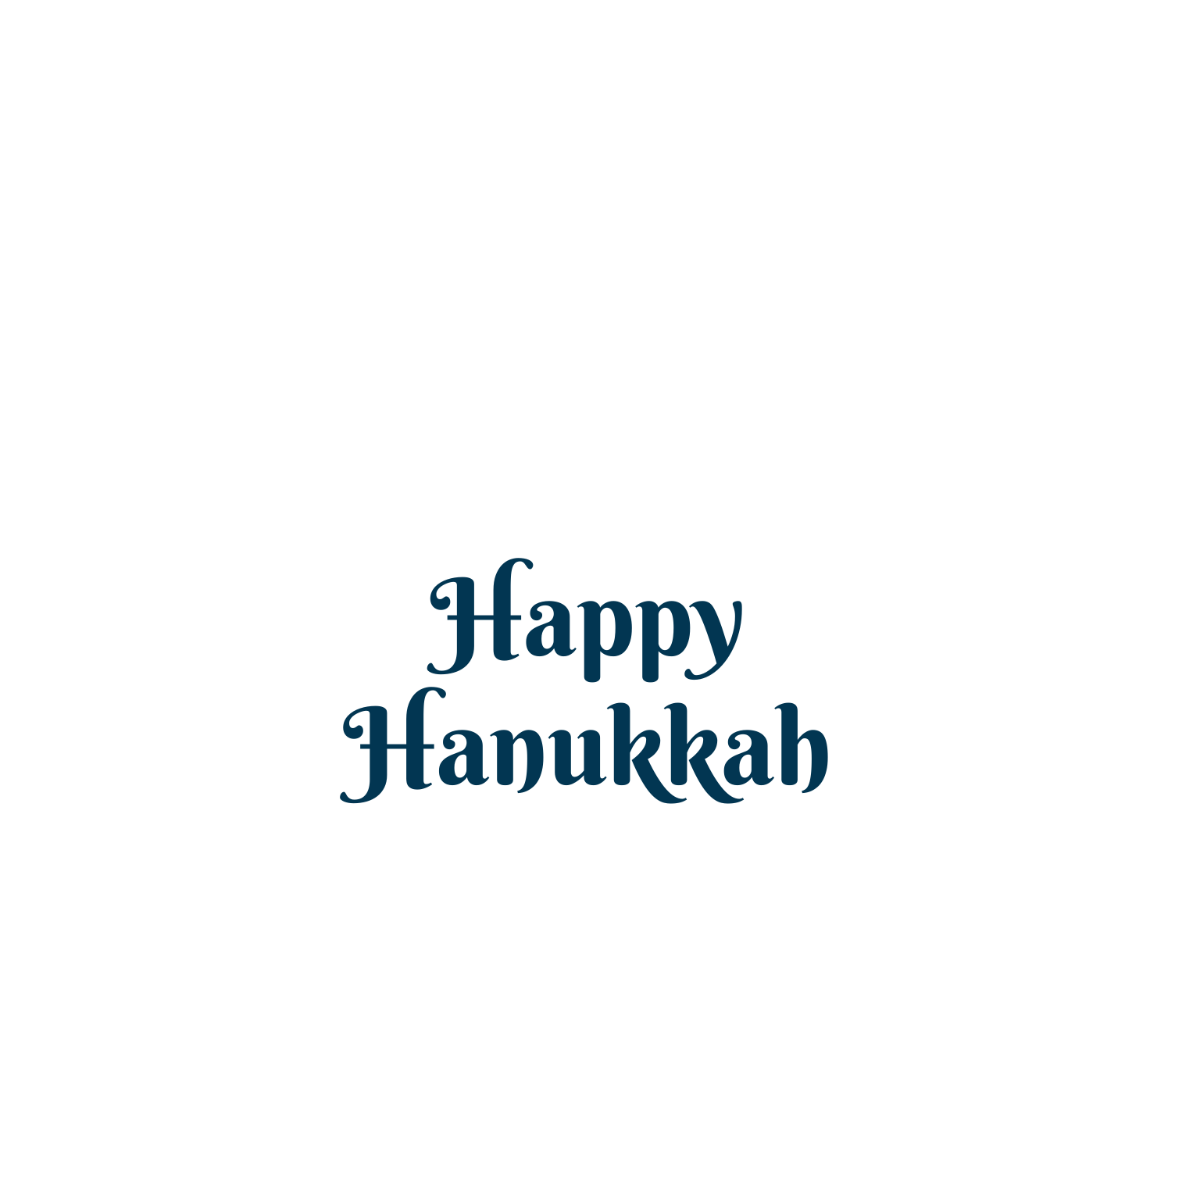 Happy Hanukkah Vector Template